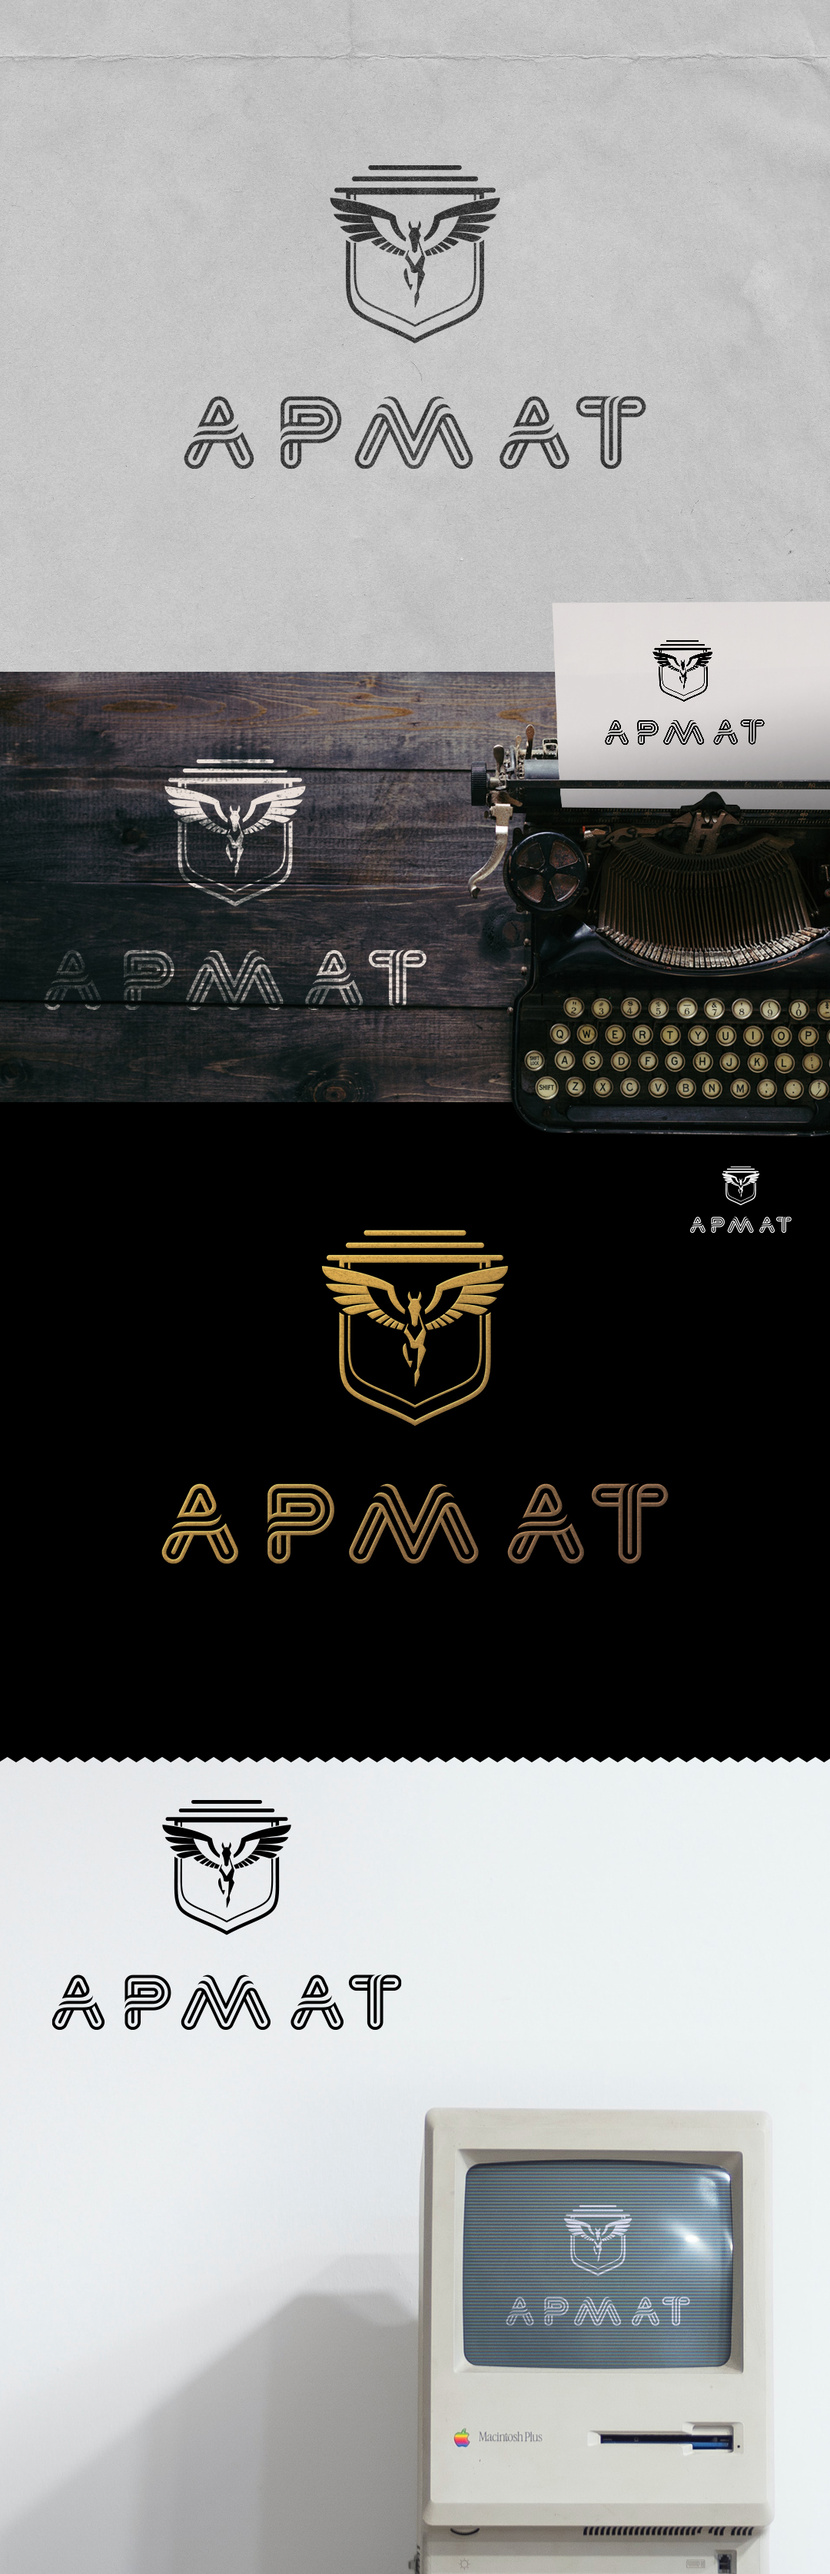 + - Логотип для сталелитейного завода АРМАТ